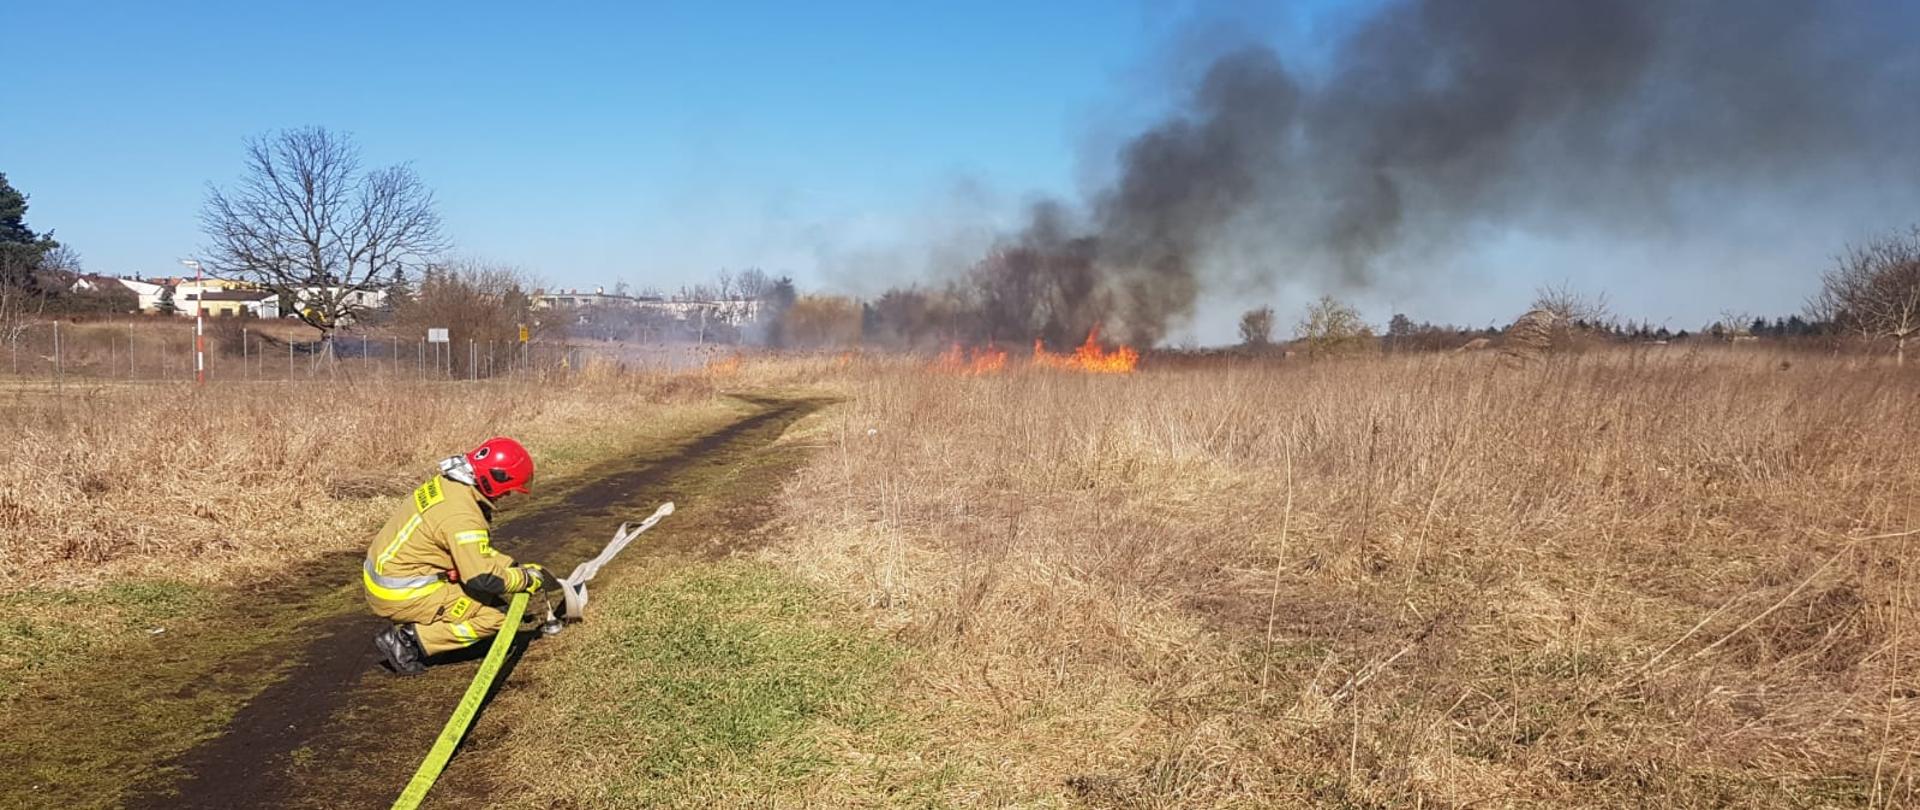 Na zdjęciu widzimy palące się trawy oraz strażaka rozwijającego linię gaśniczą